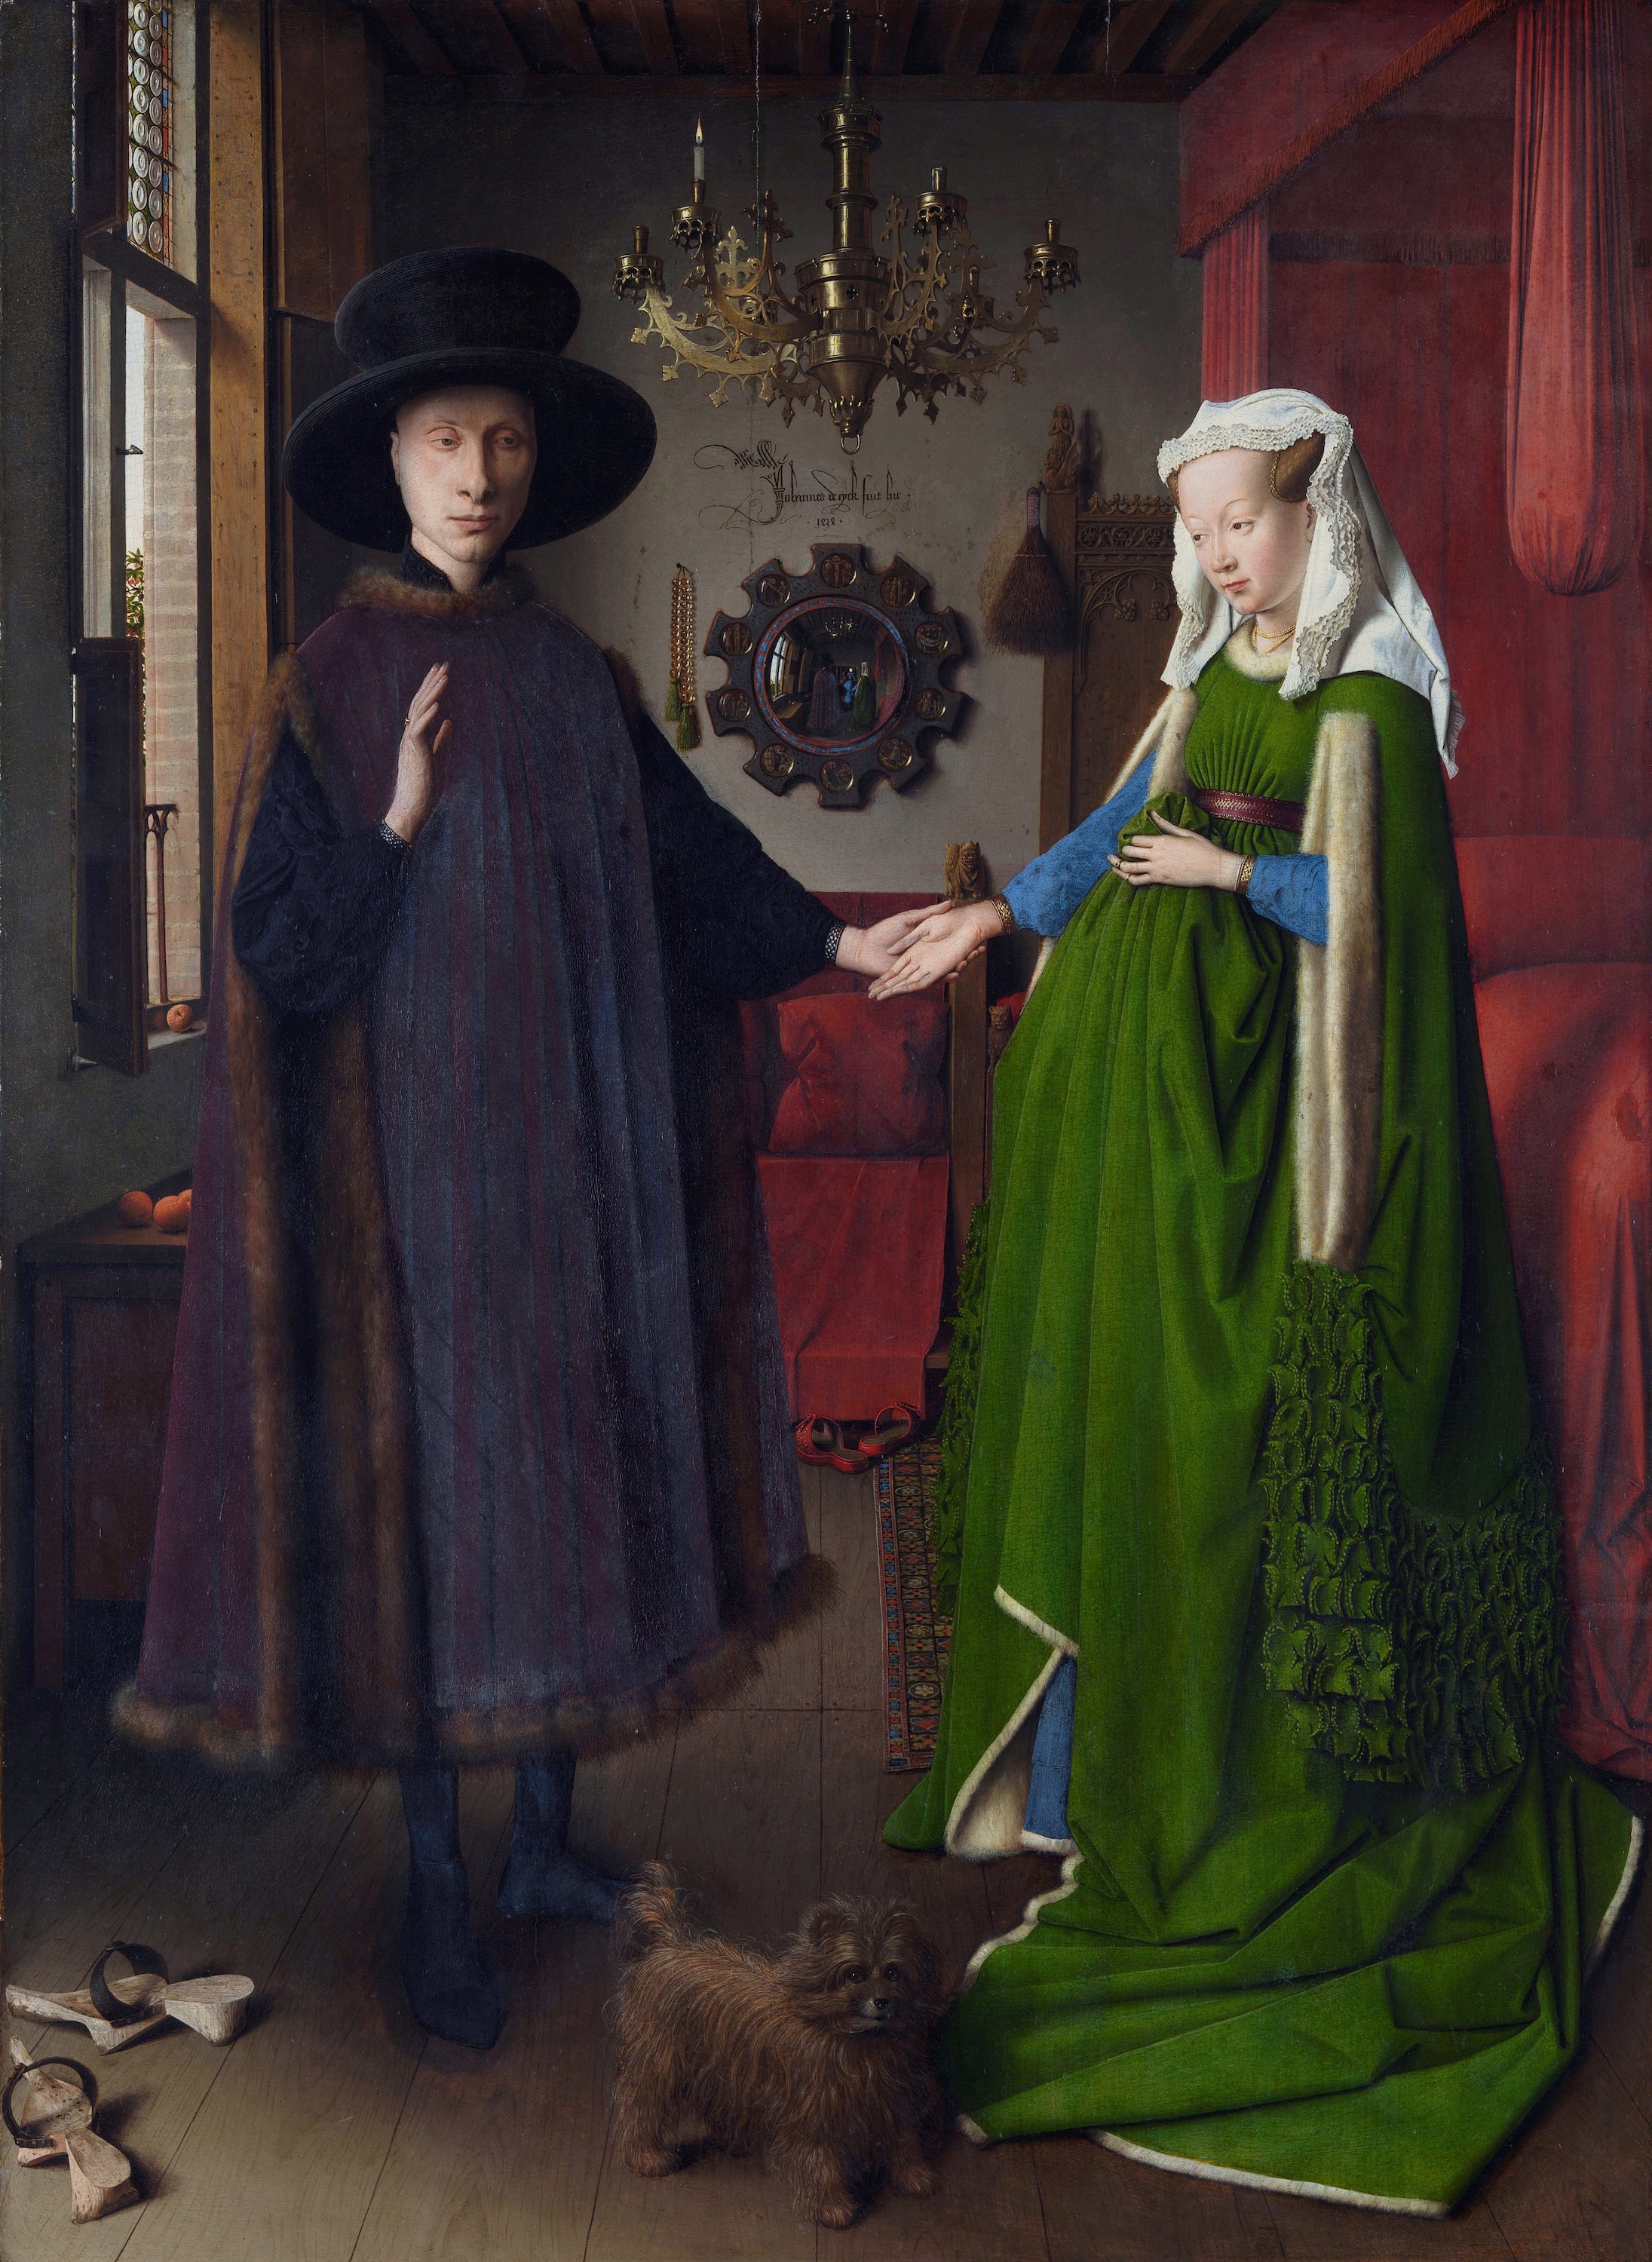 アルノルフィーニ夫妻像 by Jan van Eyck - 1434年 - 82 x 60 cm 